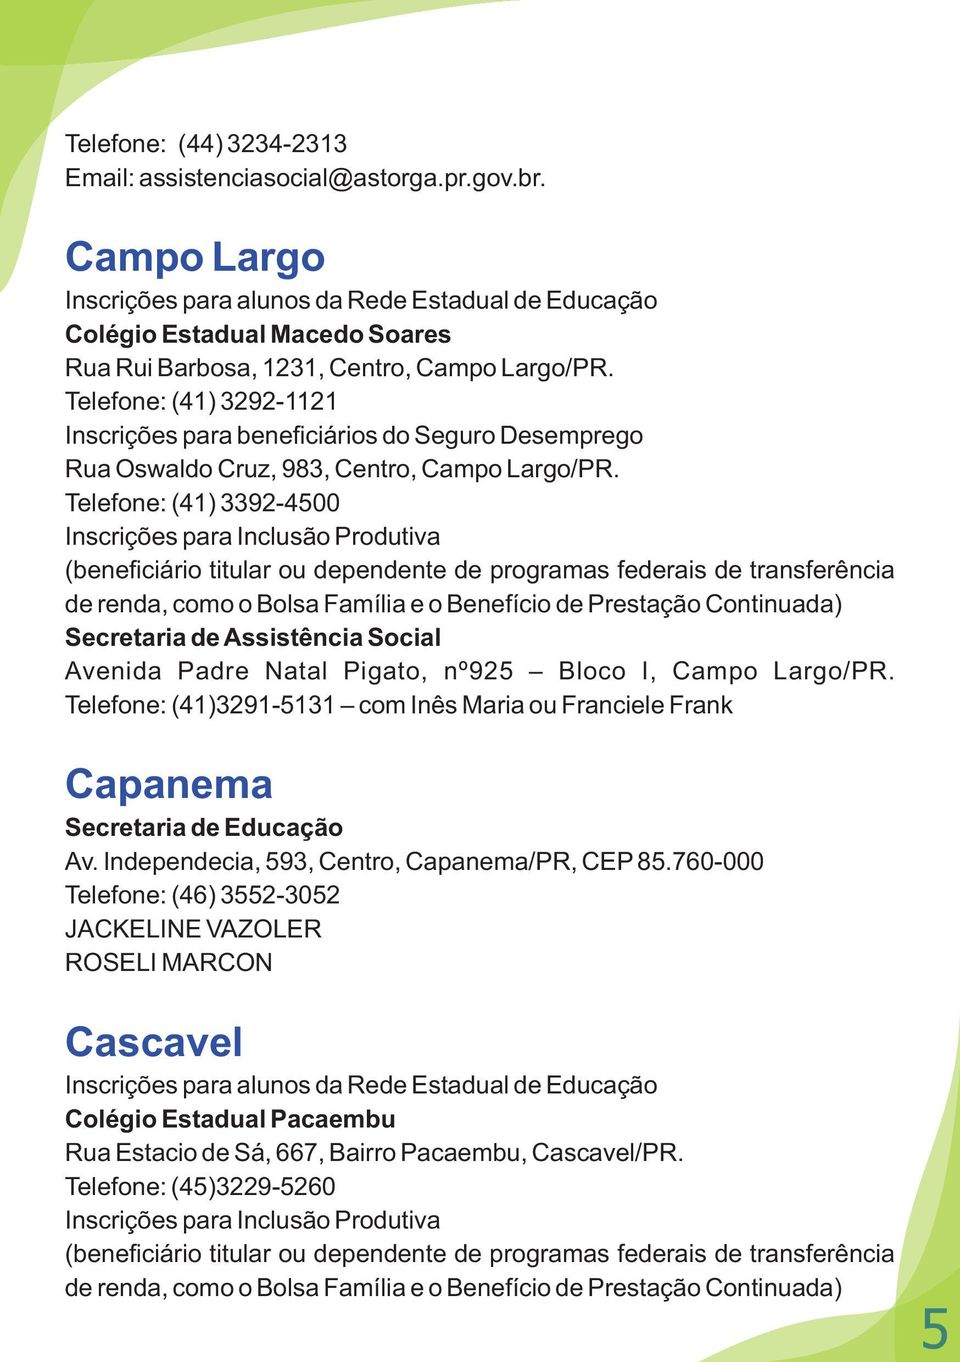 Telefone: (41) 3292-1121 Inscrições para beneficiários do Seguro Desemprego Rua Oswaldo Cruz, 983, Centro, Campo Largo/PR.